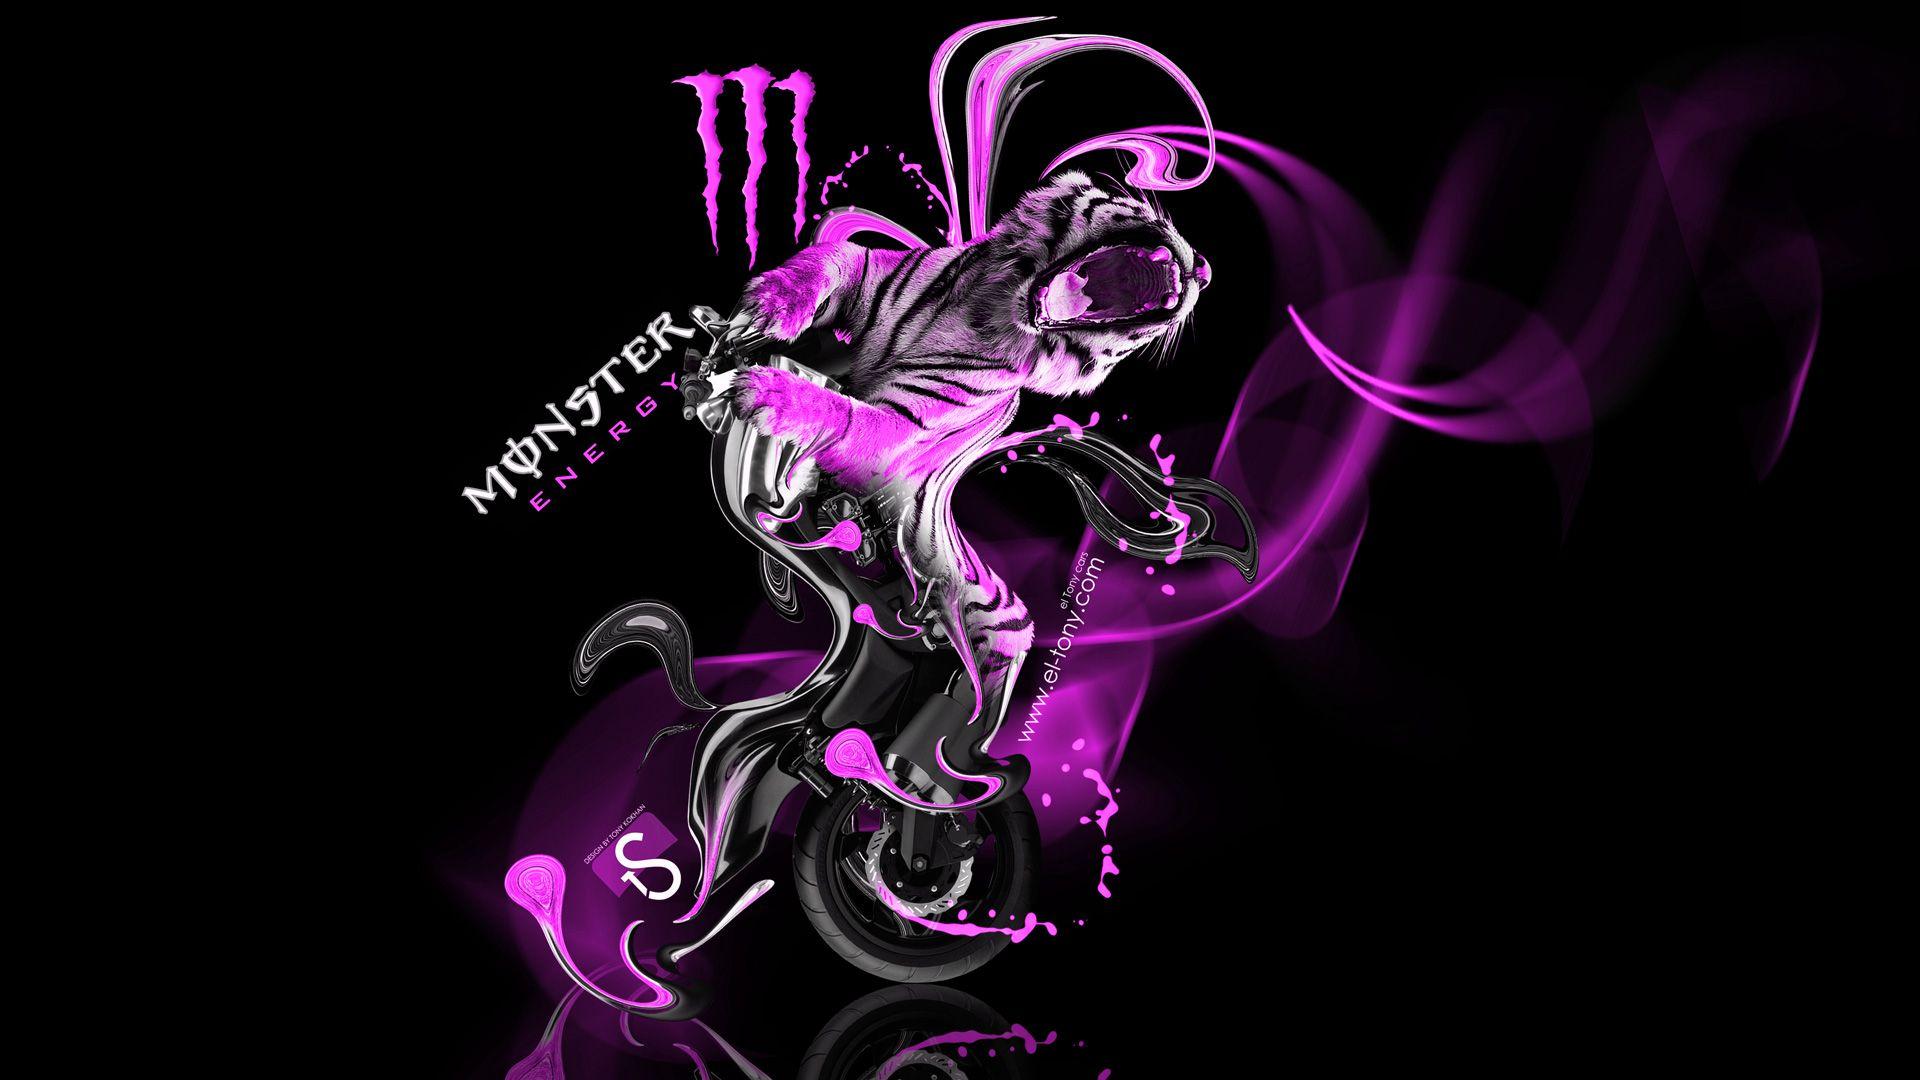 Pink Monster Energy Logo - 1920x1080px Fox and Monster Logo Wallpaper